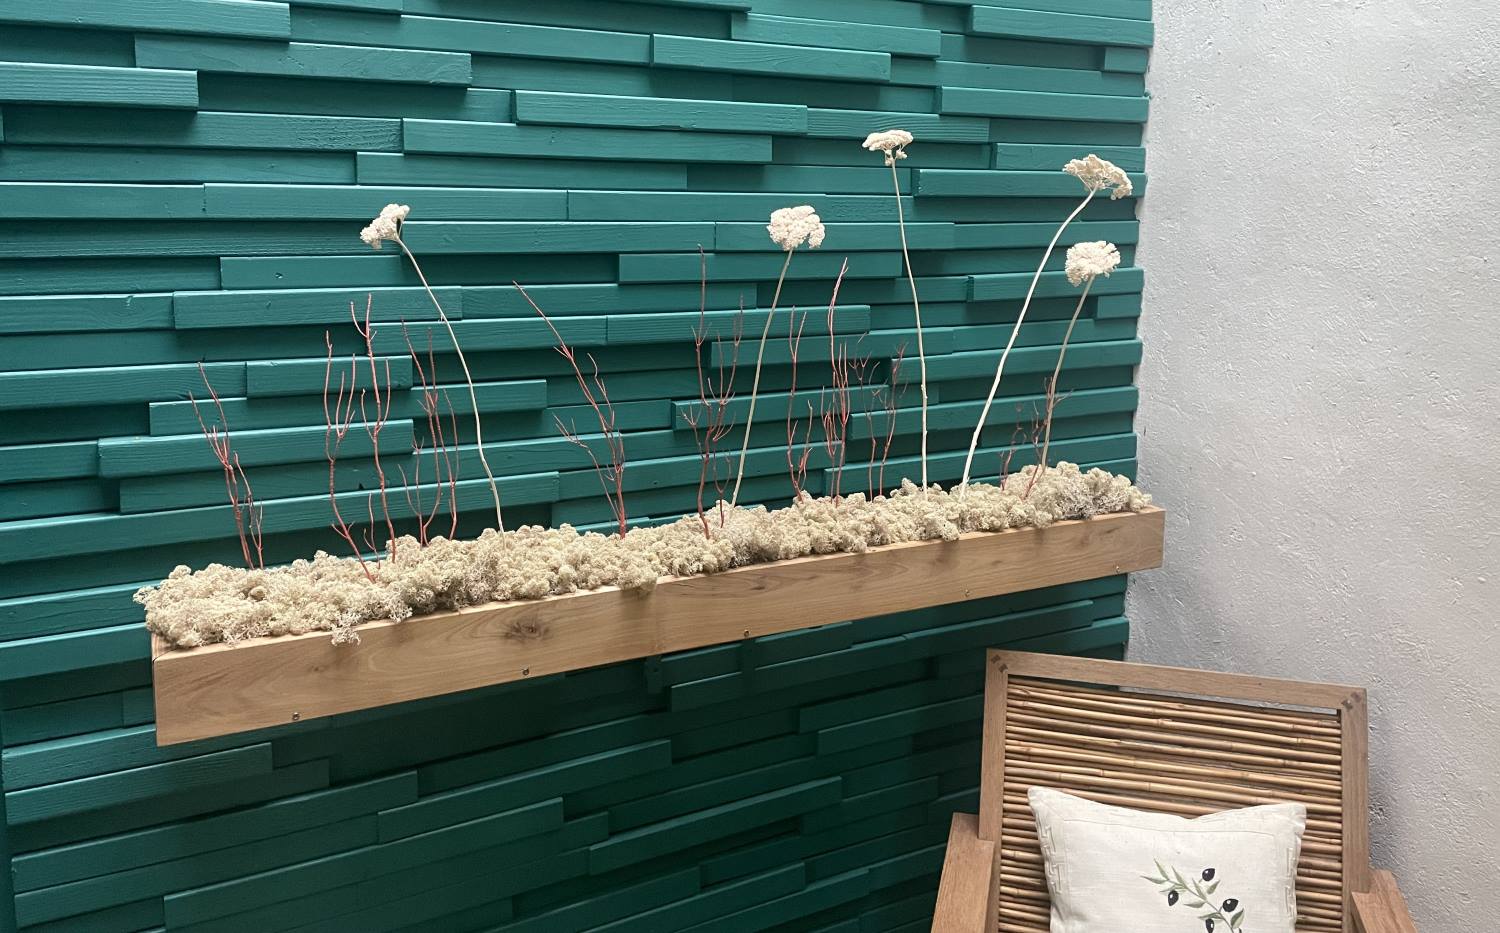 Décoration intérieure au design floral en lichen stabilisé et plantes naturelles stabilisées dans une maison contemporaine. Composition en végétaux stabilisés accroché à un mur turquoise en bois, avec une chaise en bambou.